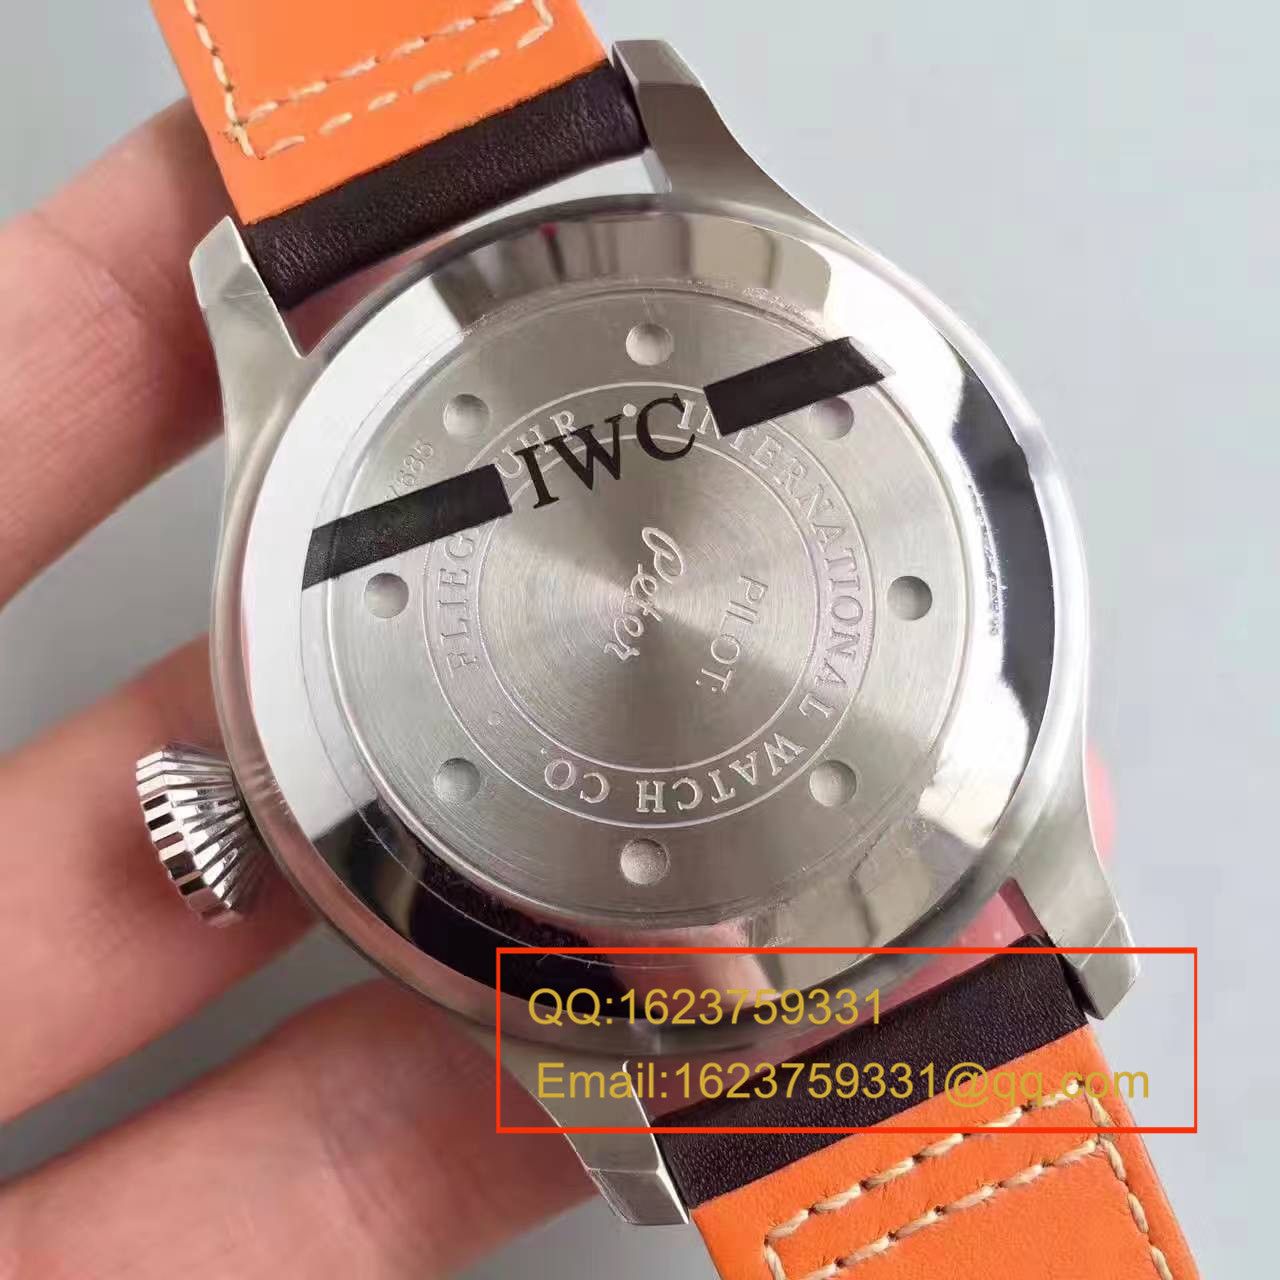 【ZF一比一精仿手表】万国大型飞行员年历腕表“小王子”特别版系列IW502702腕表 